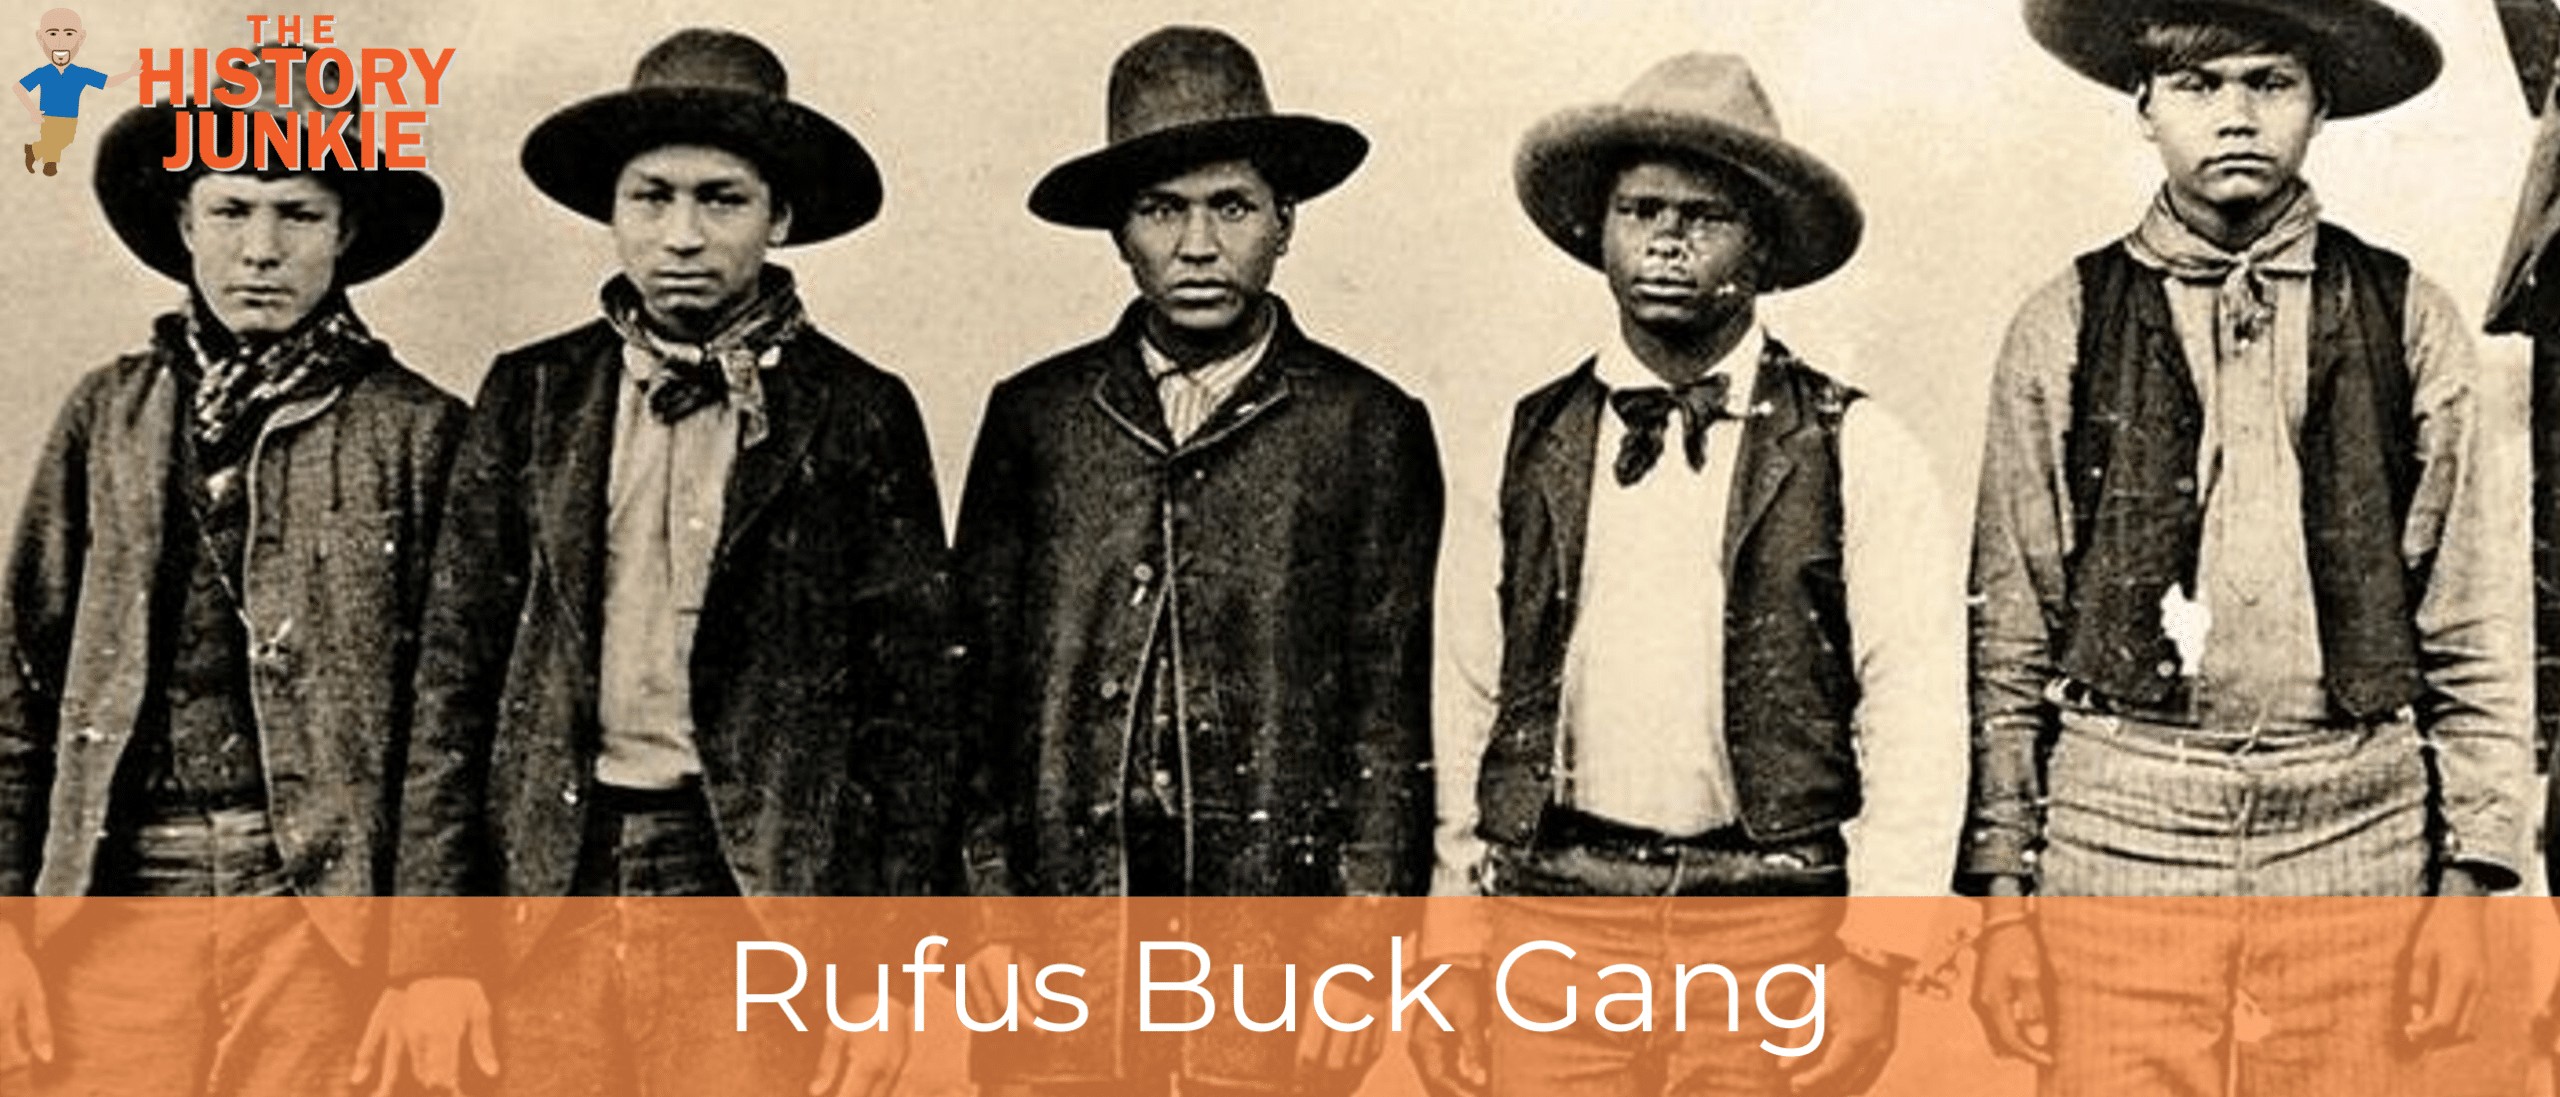 Rufus Buck Gang